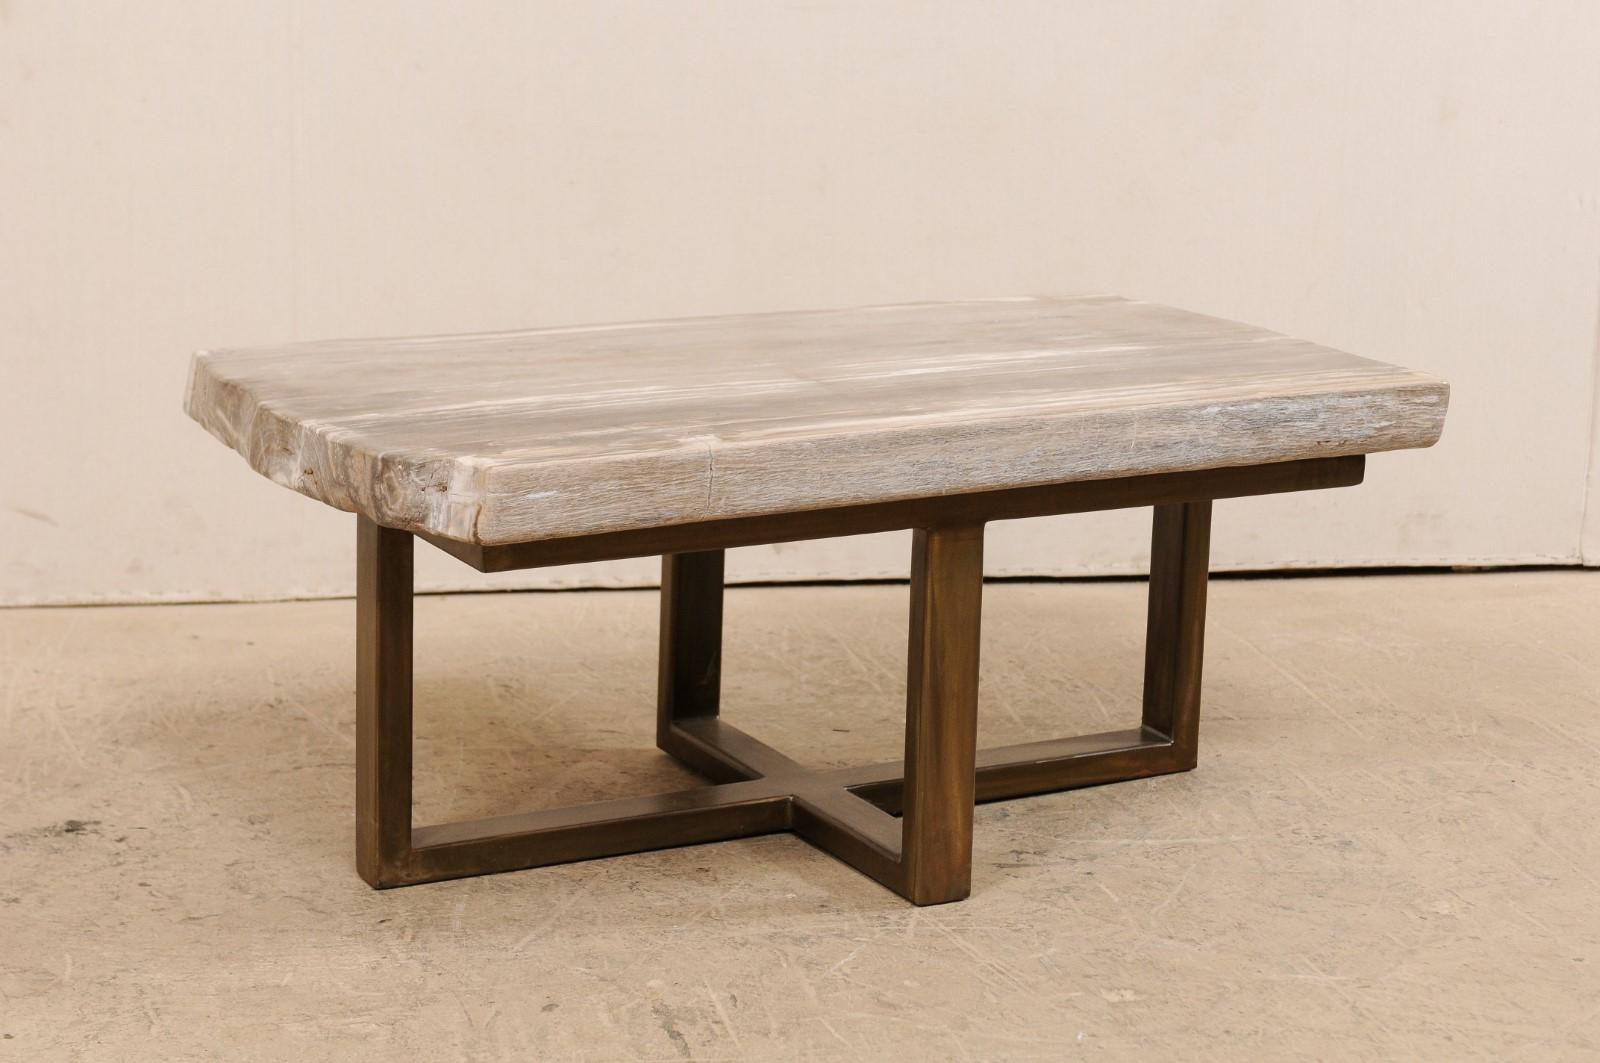 Une table basse moderne en bois pétrifié (pouvant également servir de banc). Cette table basse personnalisée a été façonnée à partir d'une magnifique dalle épaisse de bois pétrifié poli, de forme rectangulaire, d'une longueur d'environ 1,5 mètre. Ce